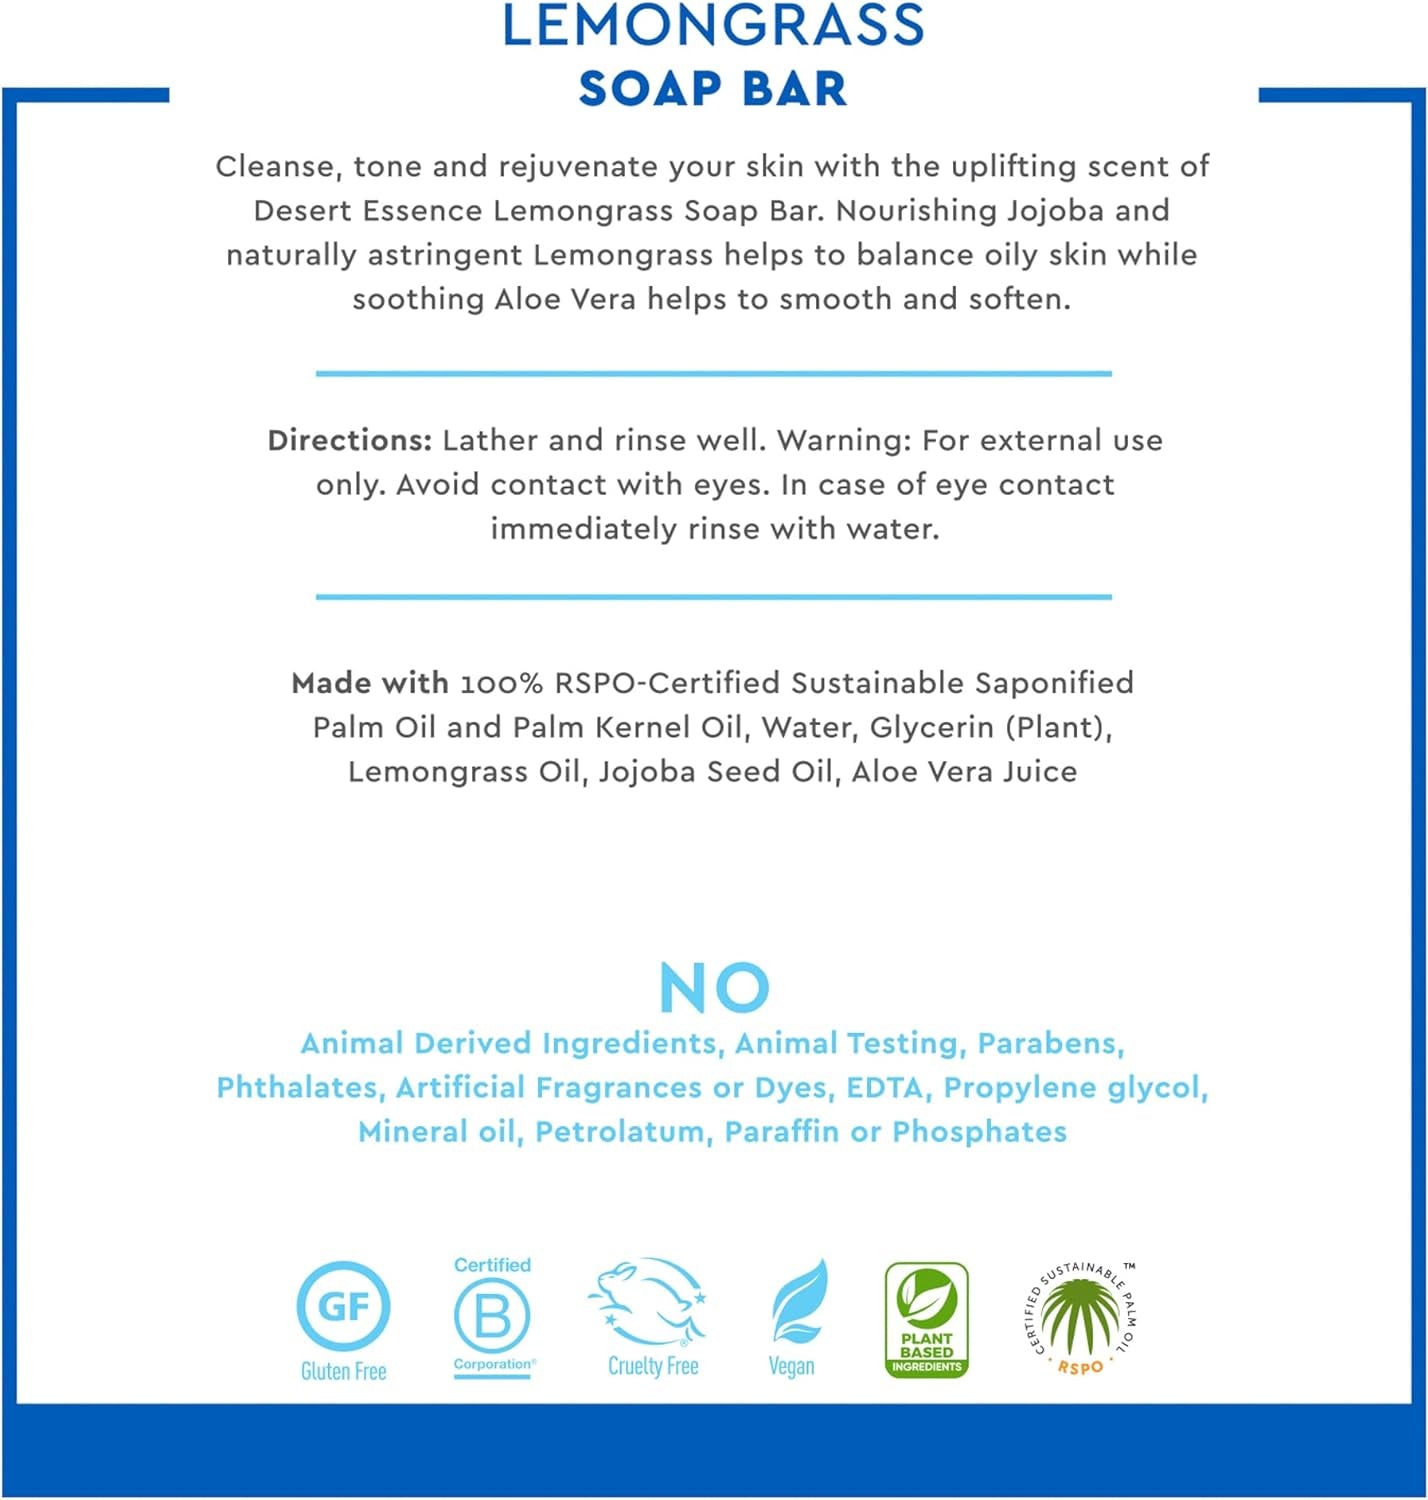 , Lemongrass Soap Bar 5 Oz (Pack of 4) - Non-Gmo Certified - Gluten Free - Vegan - Cruelty Free - Sustainable Palm Oil - Lemongrass Oil & Jojoba Oil - Cleanses, Softens & Awakens